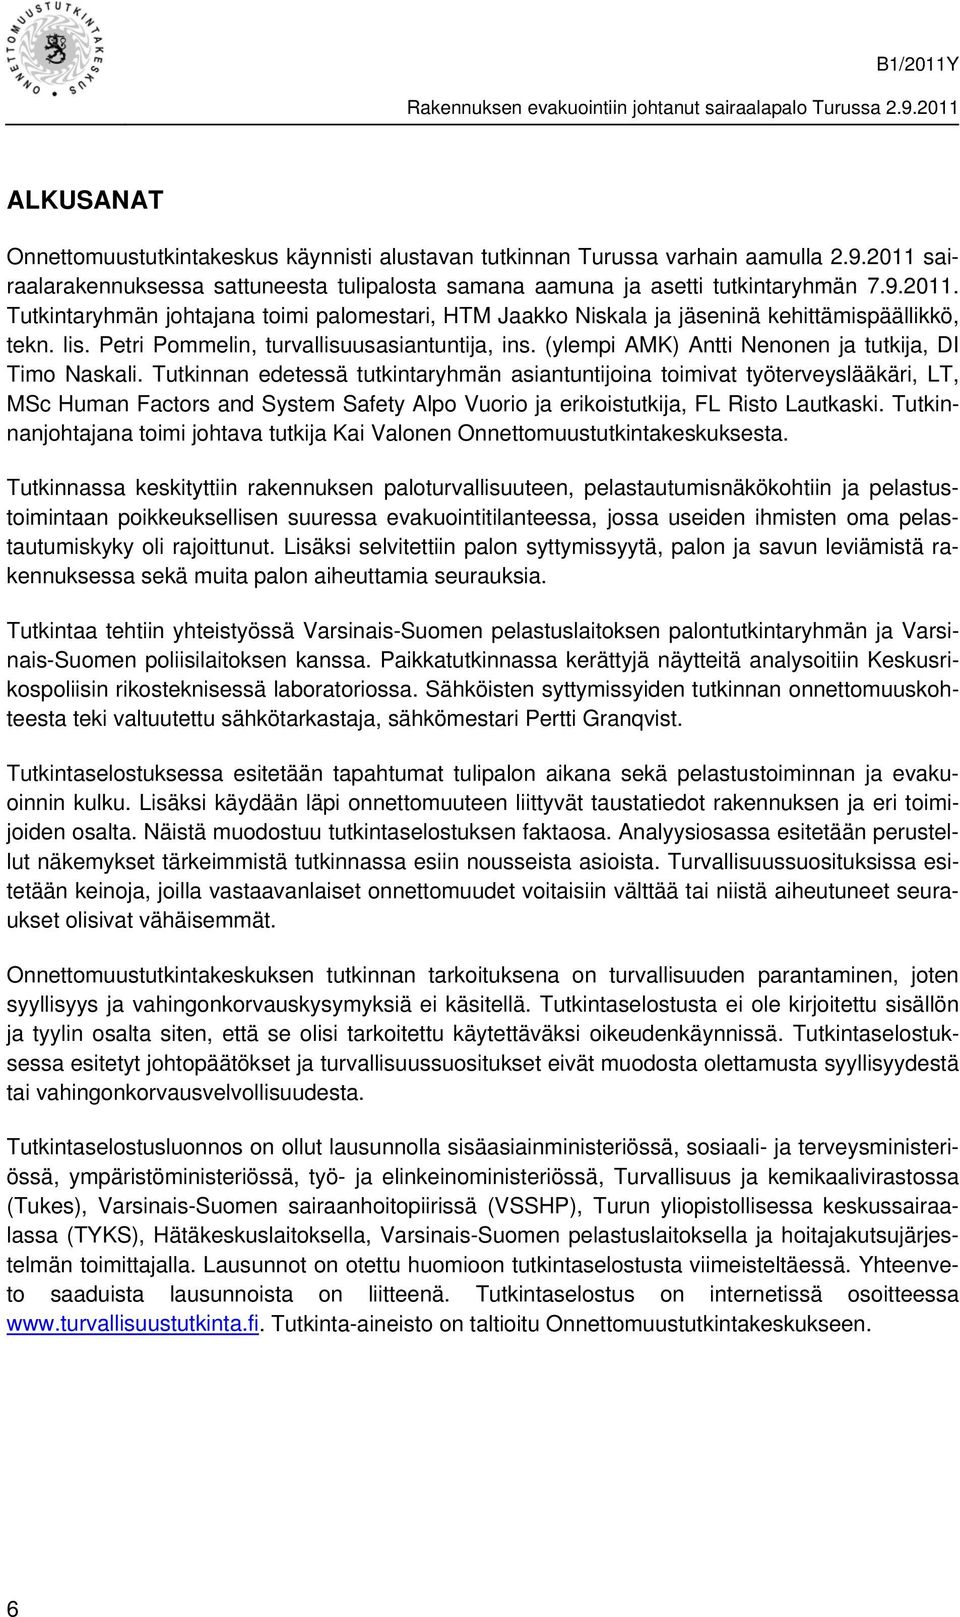 lis. Petri Pommelin, turvallisuusasiantuntija, ins. (ylempi AMK) Antti Nenonen ja tutkija, DI Timo Naskali.